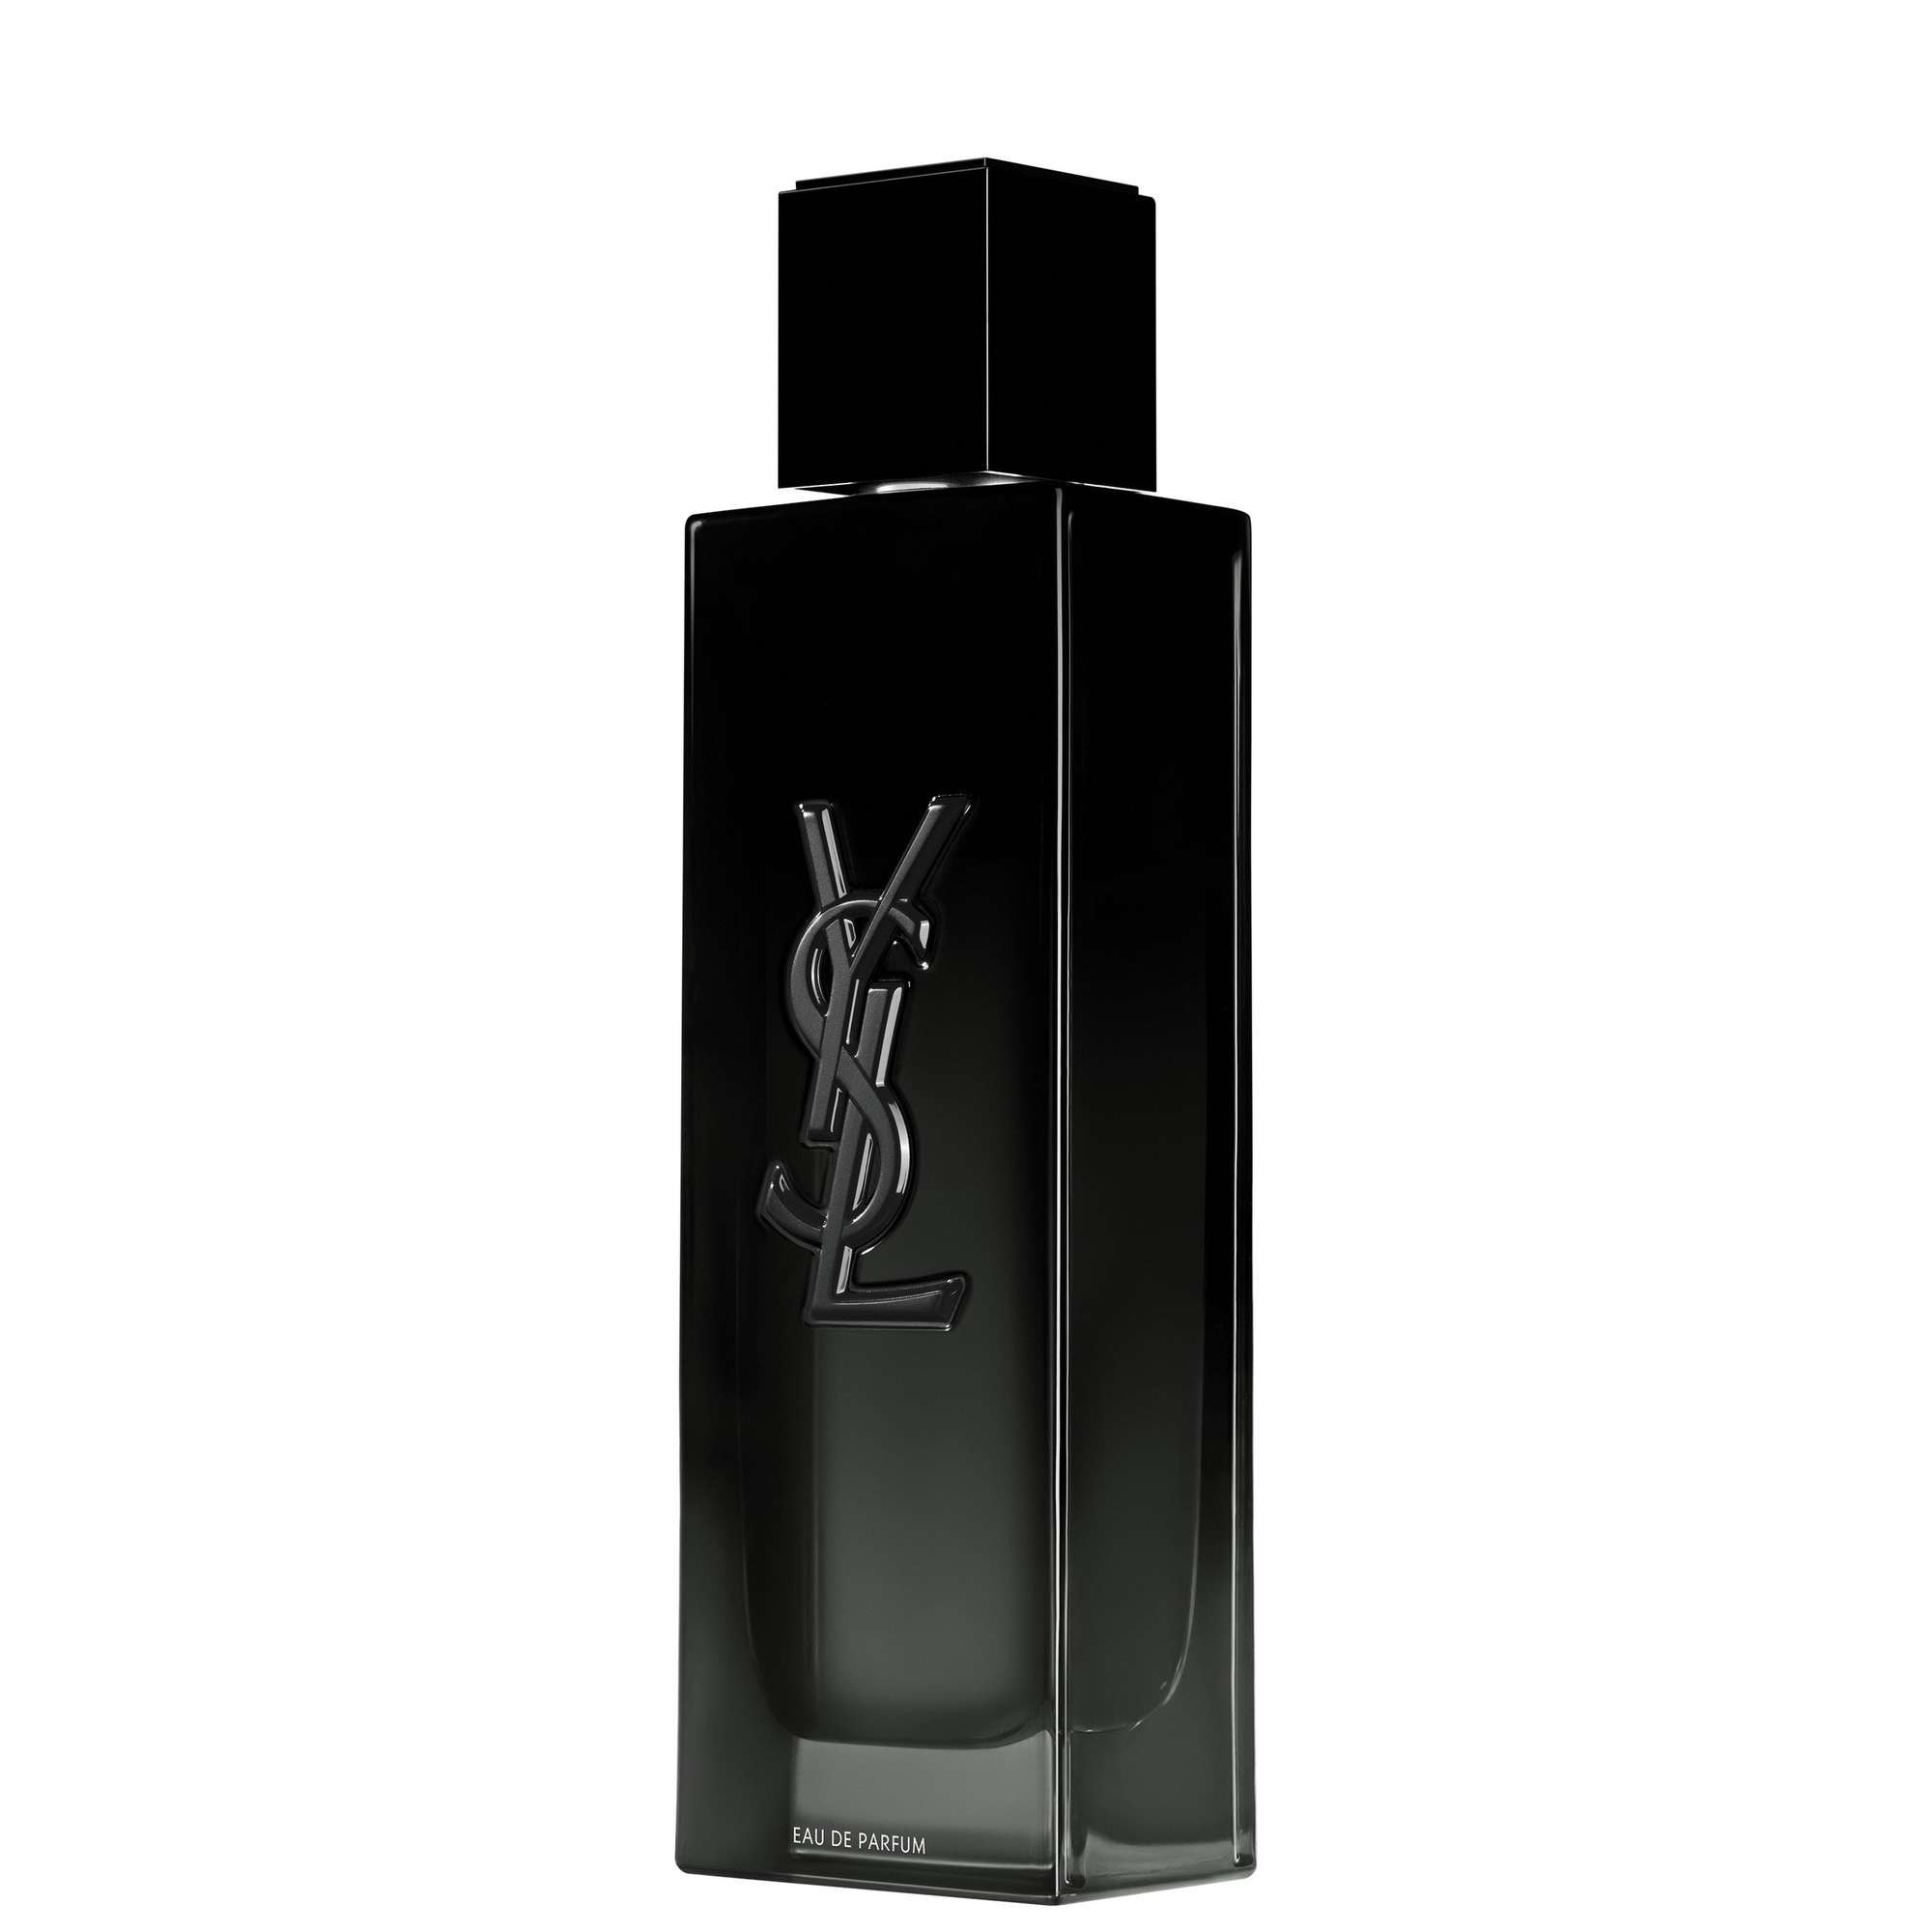 Photos - Women's Fragrance Yves Saint Laurent MYSLF Eau de Parfum 100ml 